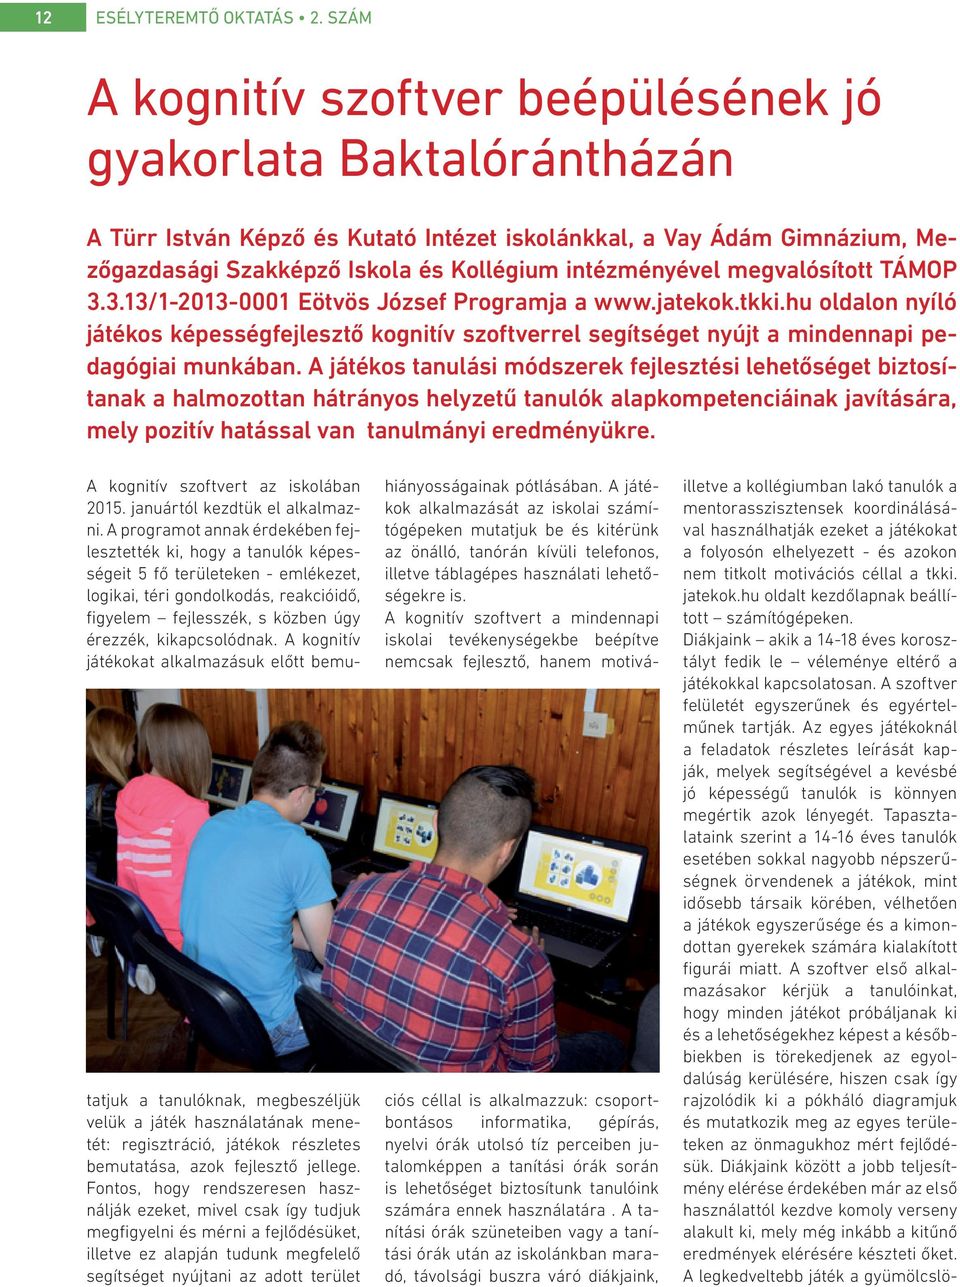 megvalósított TÁMOP 3.3.13/1-2013-0001 Eötvös József Programja a www.jatekok.tkki.hu oldalon nyíló játékos képességfejlesztő kognitív szoftverrel segítséget nyújt a mindennapi pedagógiai munkában.